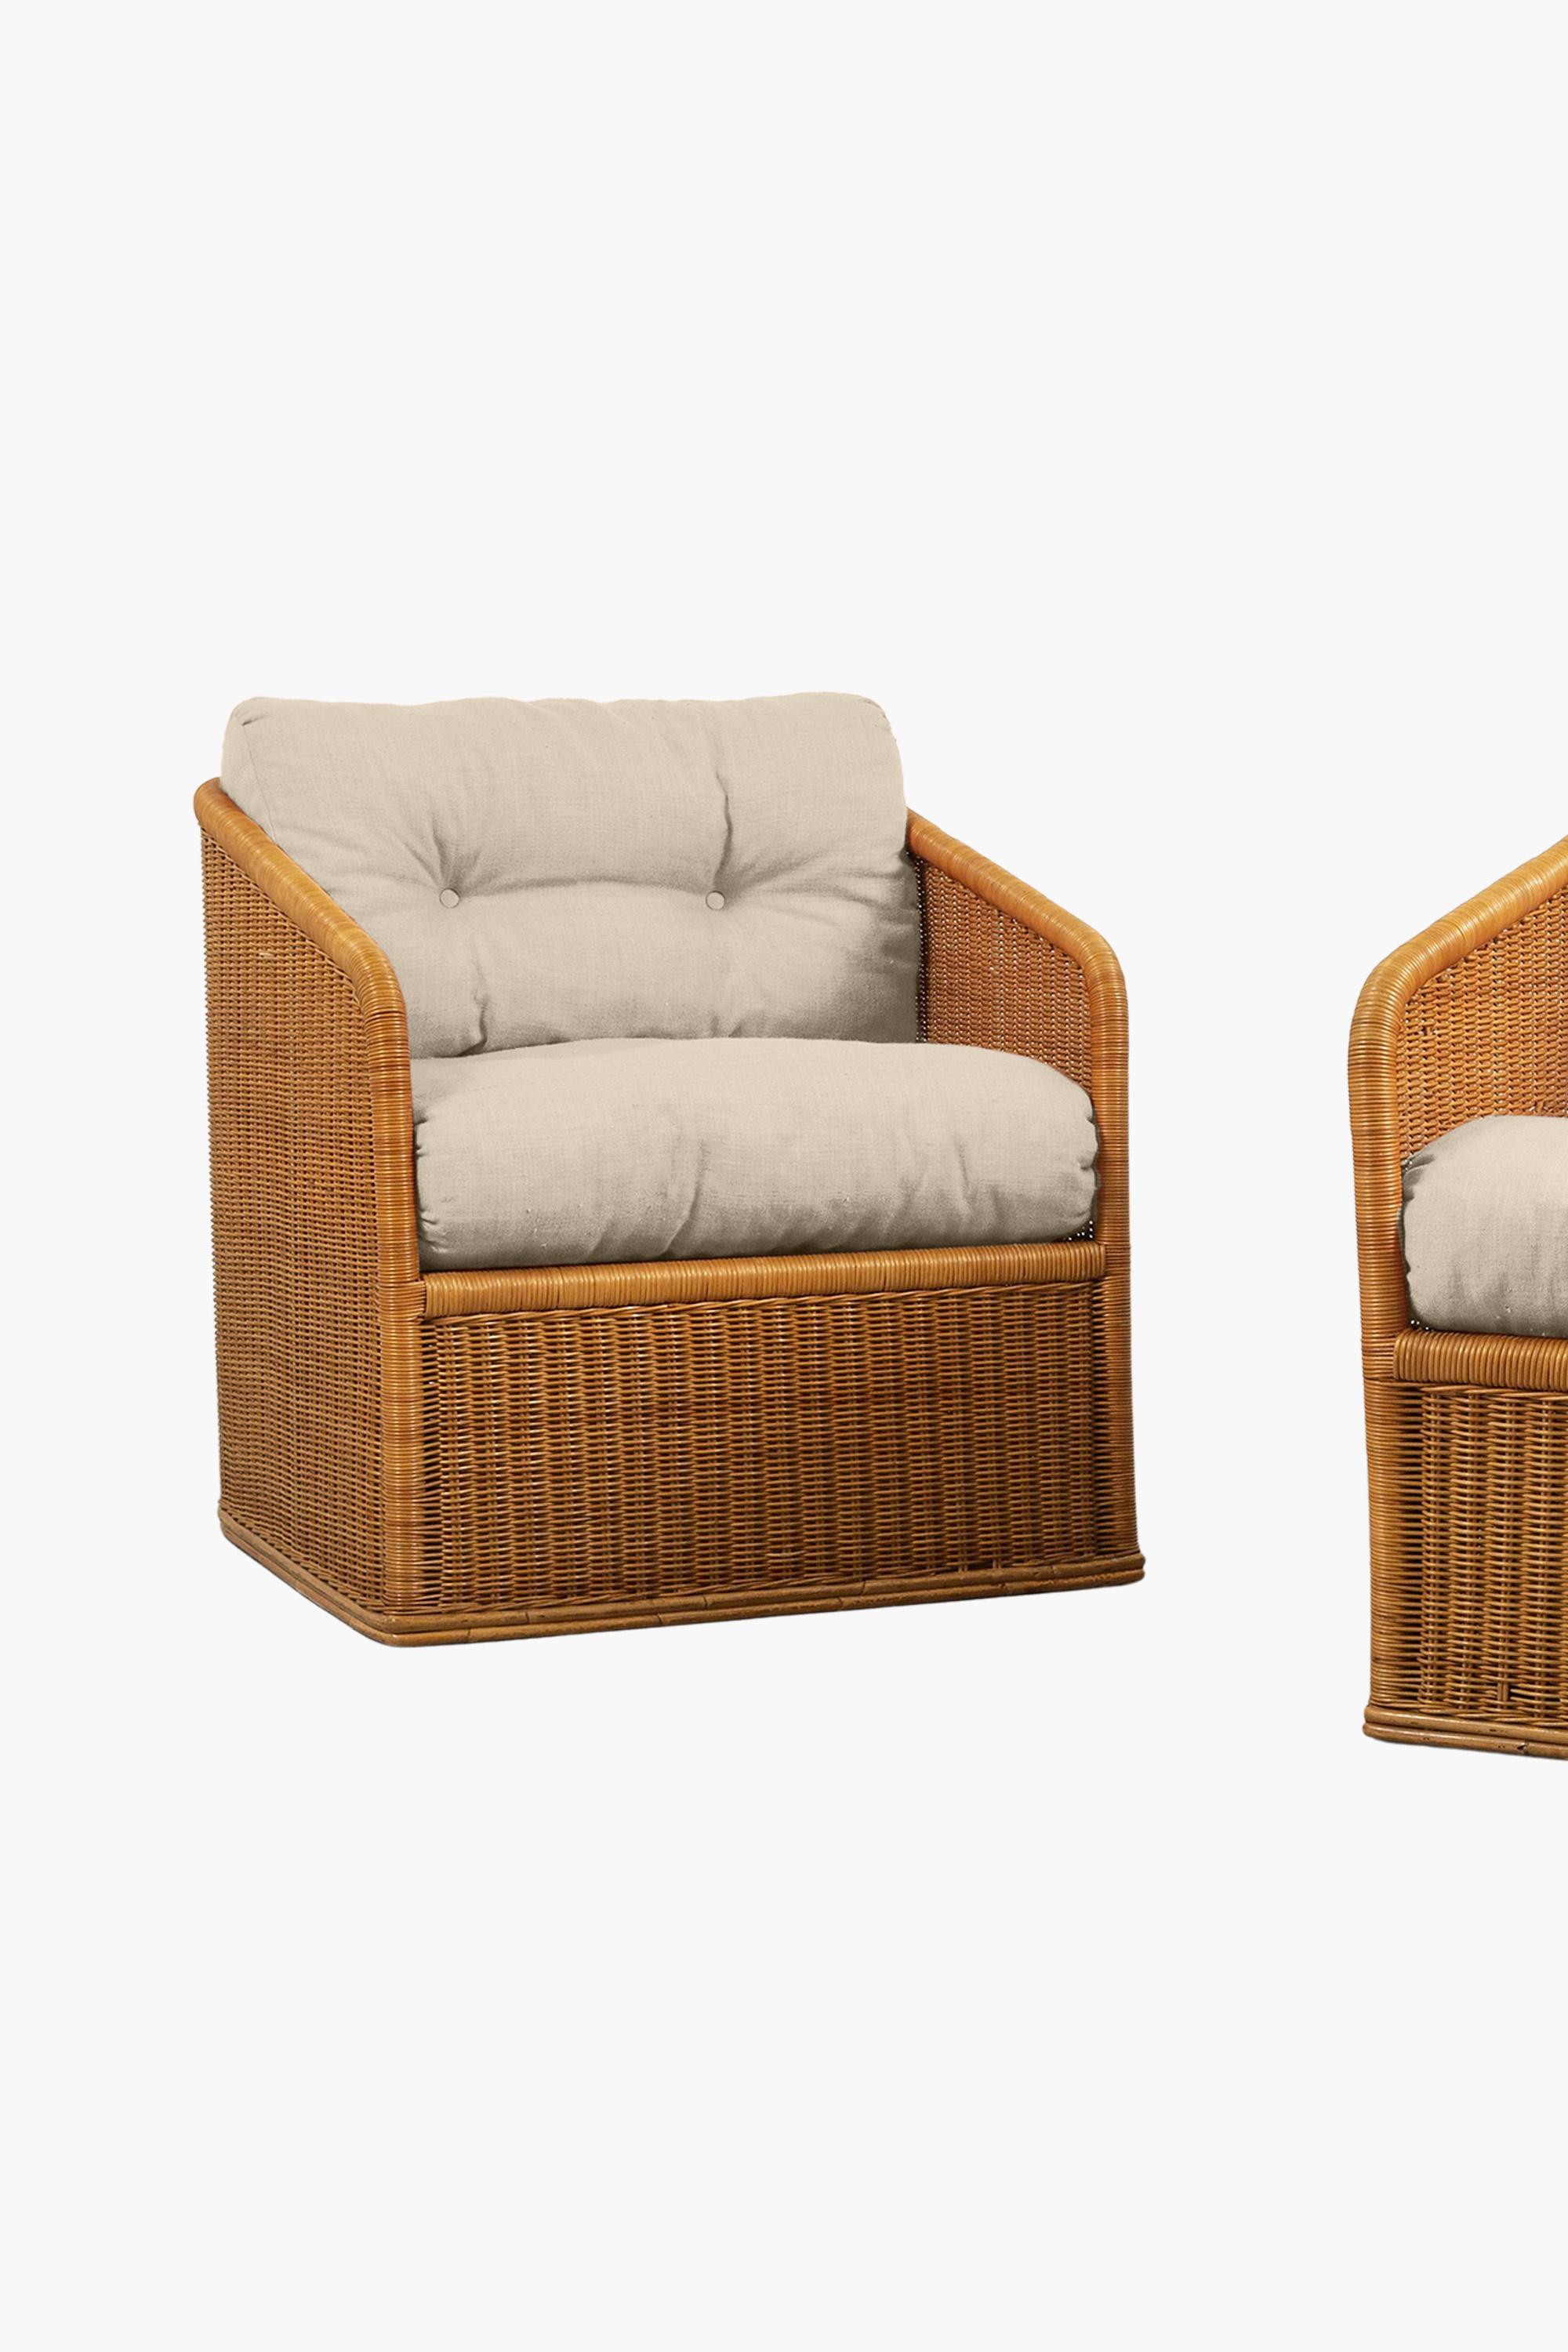 Ein stilvolles Paar Rattan-Sessel. Hergestellt in Italien um 1970.

In ausgezeichnetem Zustand. Der Preis beinhaltet die Neubespannung mit dem Material des Kunden. 
Die aktuelle Polsterung besteht aus einem modernen pfirsichfarbenen Leinen. Die